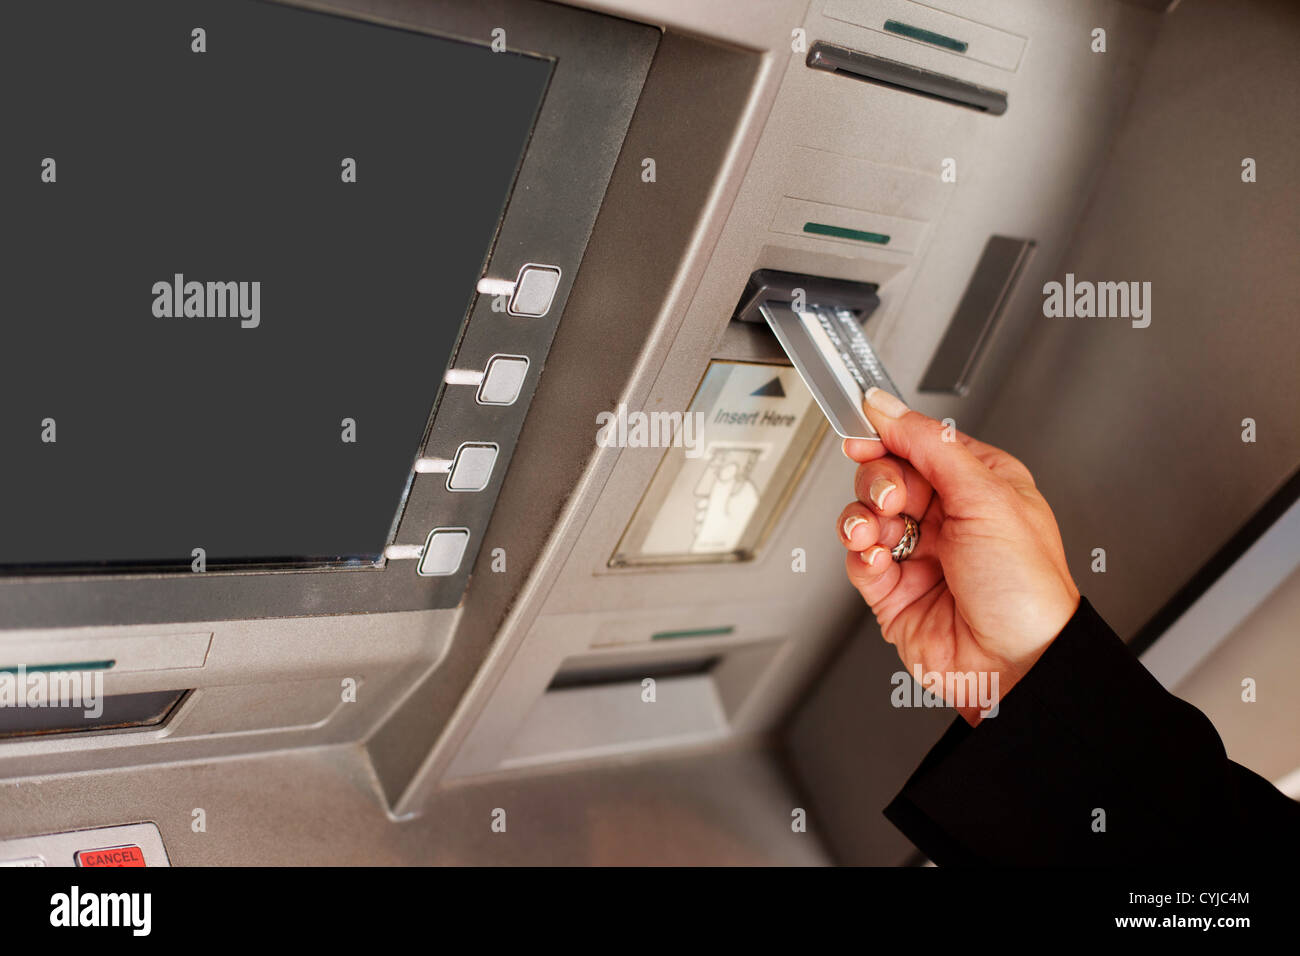 Blick auf eine weibliche Hand Einfügen einer Bankkarte in einen Geldautomaten, eine finanzielle Transaktion beginnen beschnitten Stockfoto